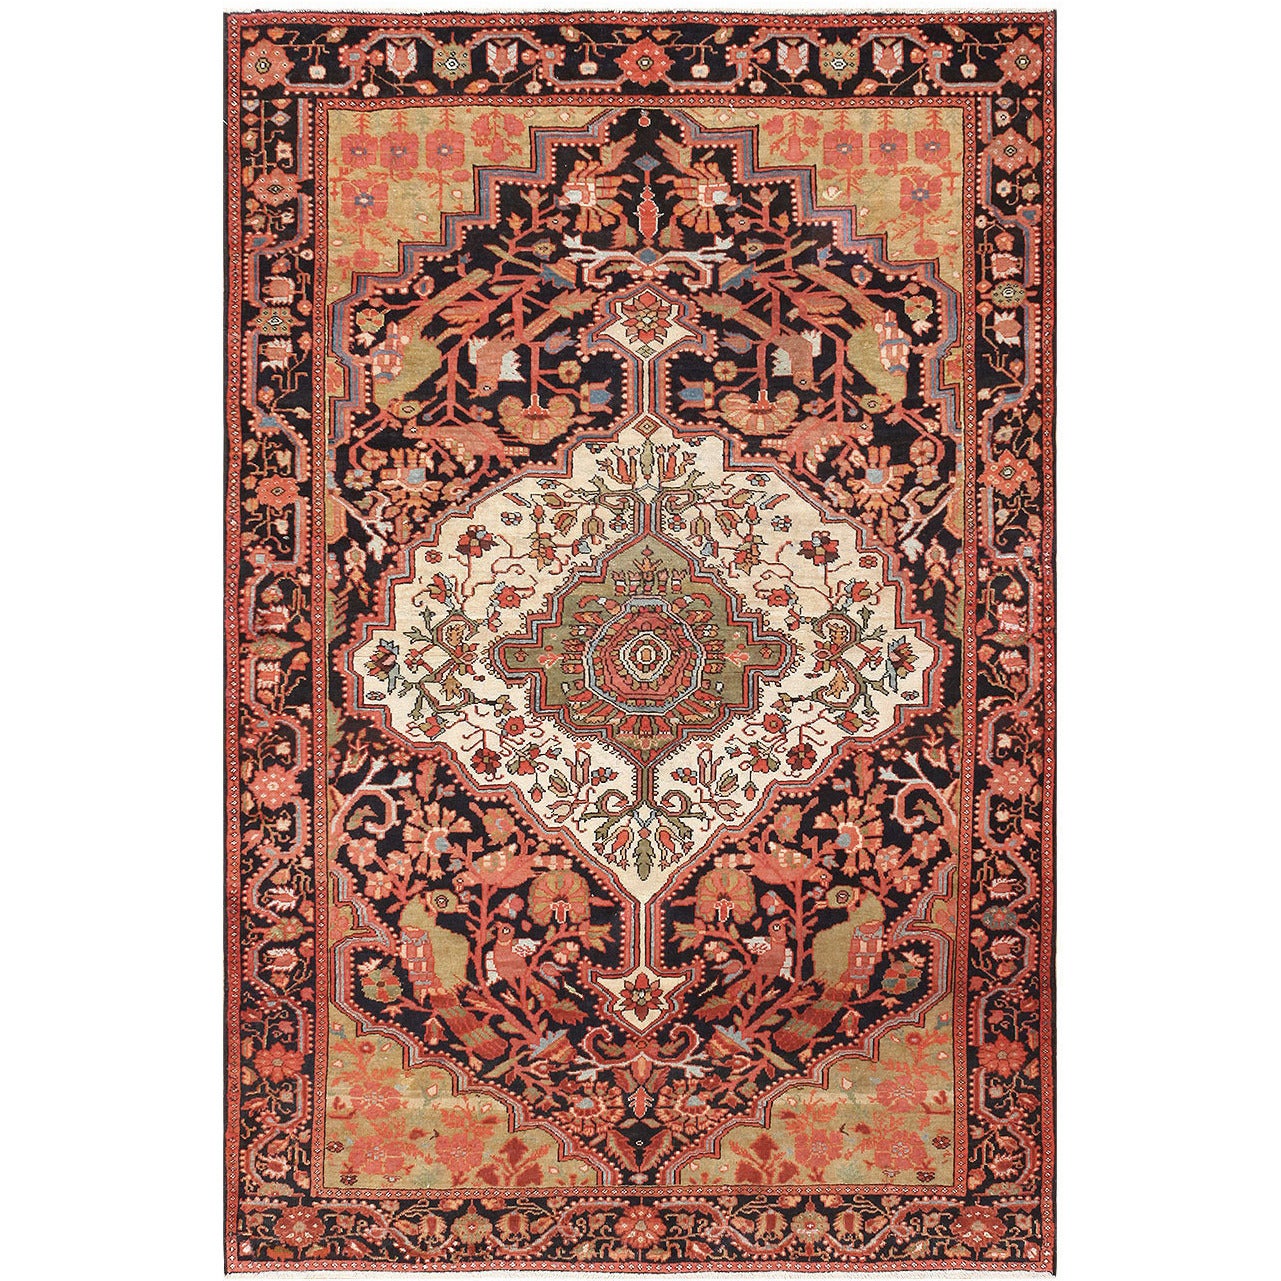 Antique Persian Sarouk Farahan Carpet